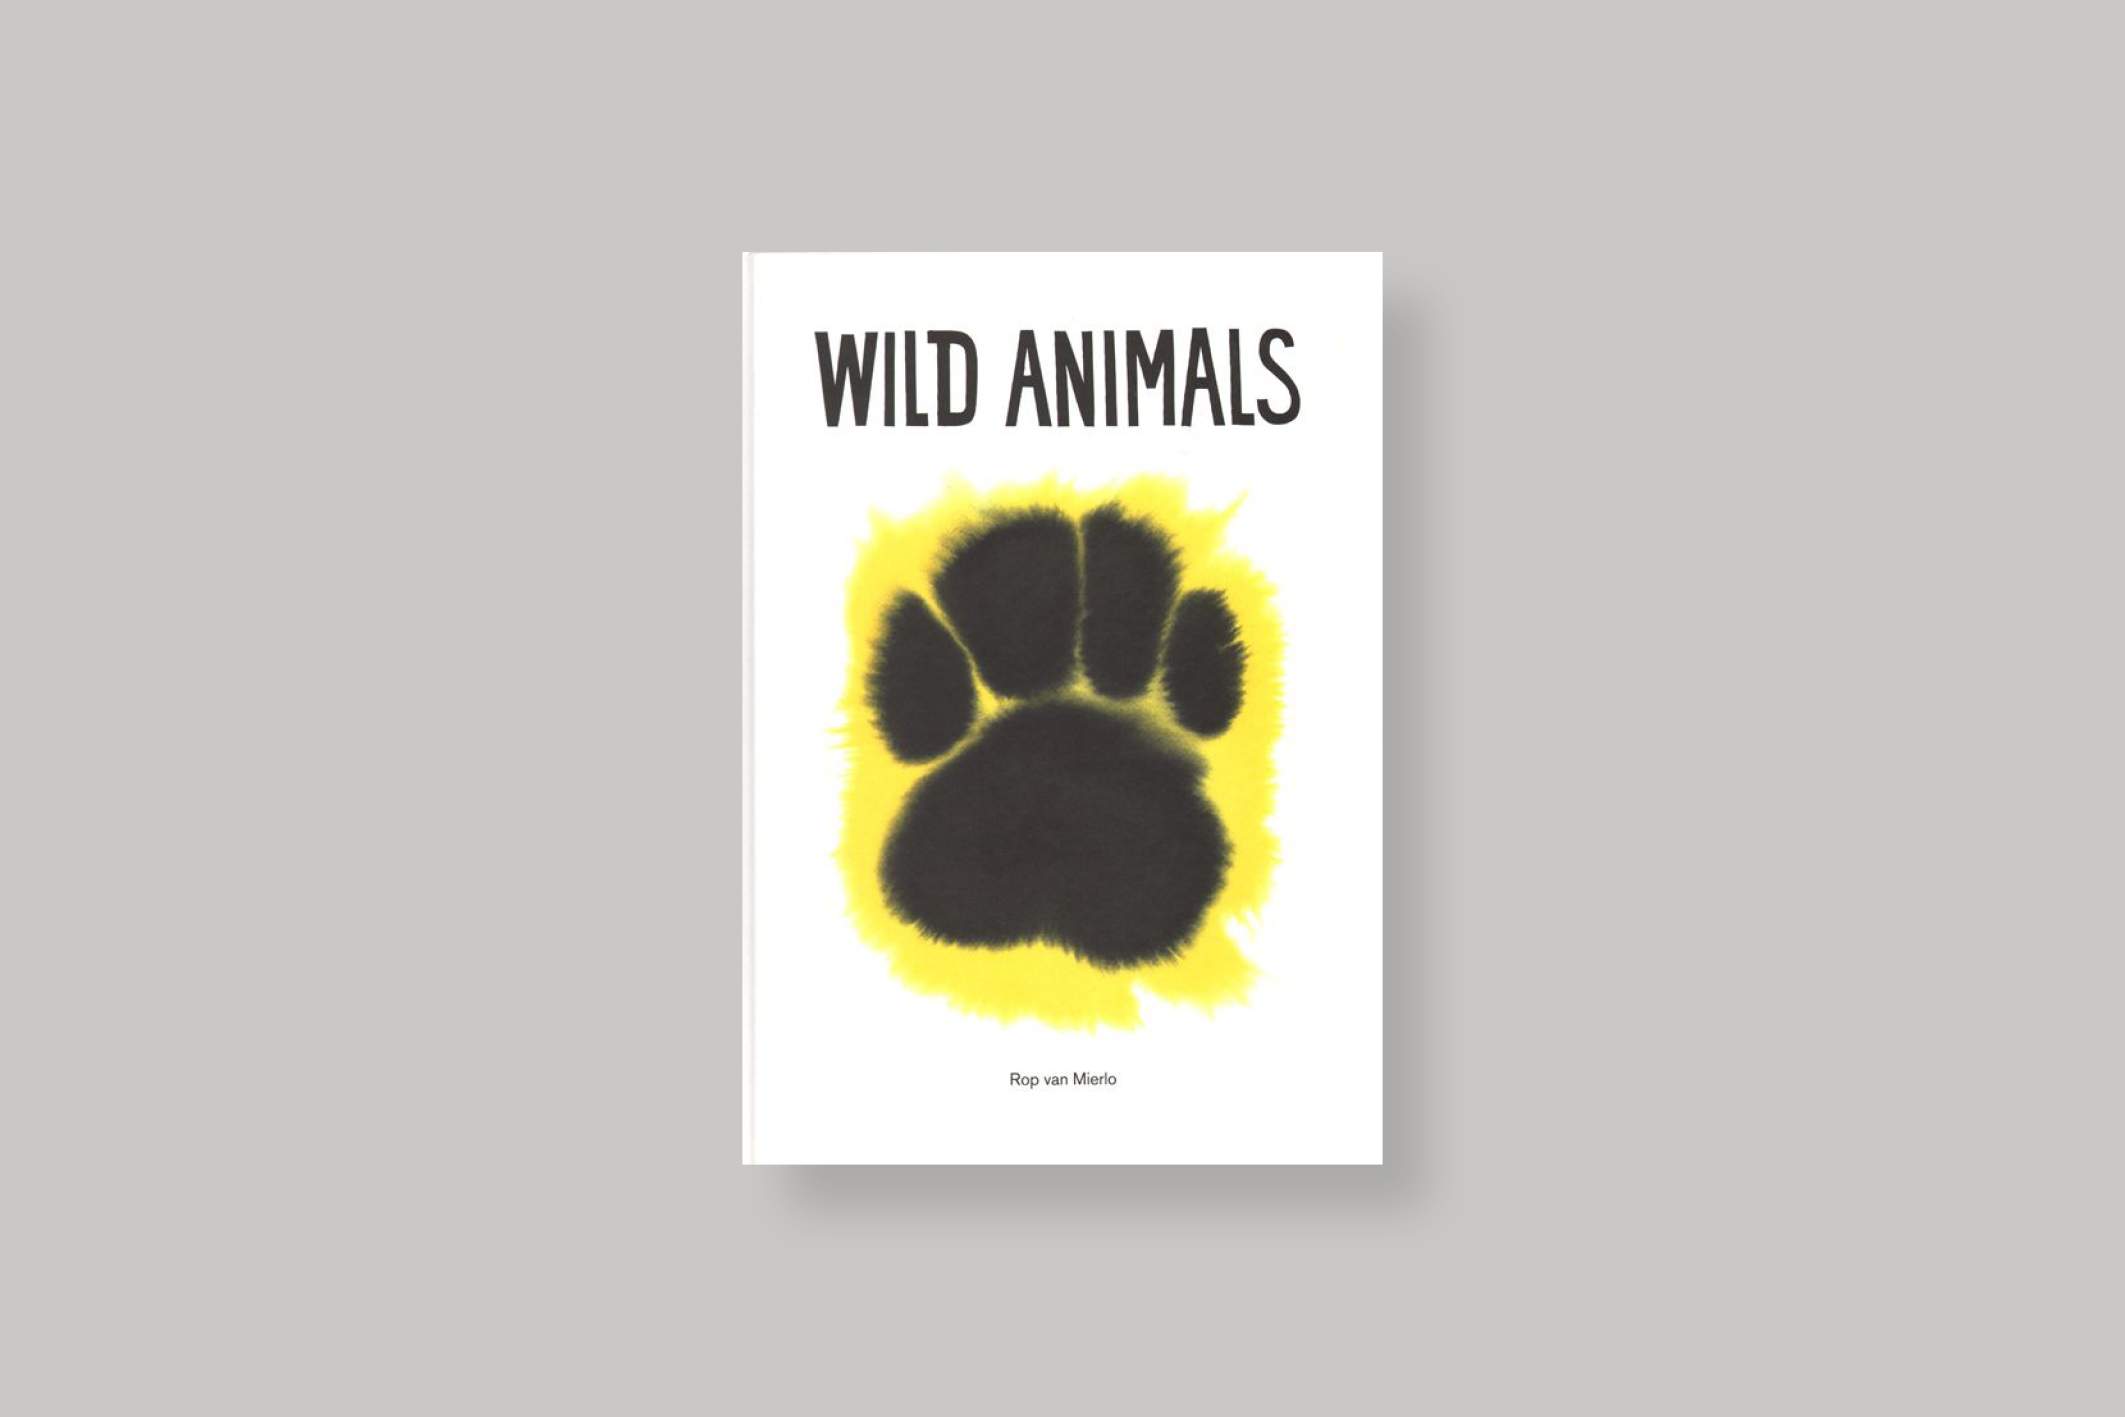 Wild-Animals-Rop-van-Mierlo-cover